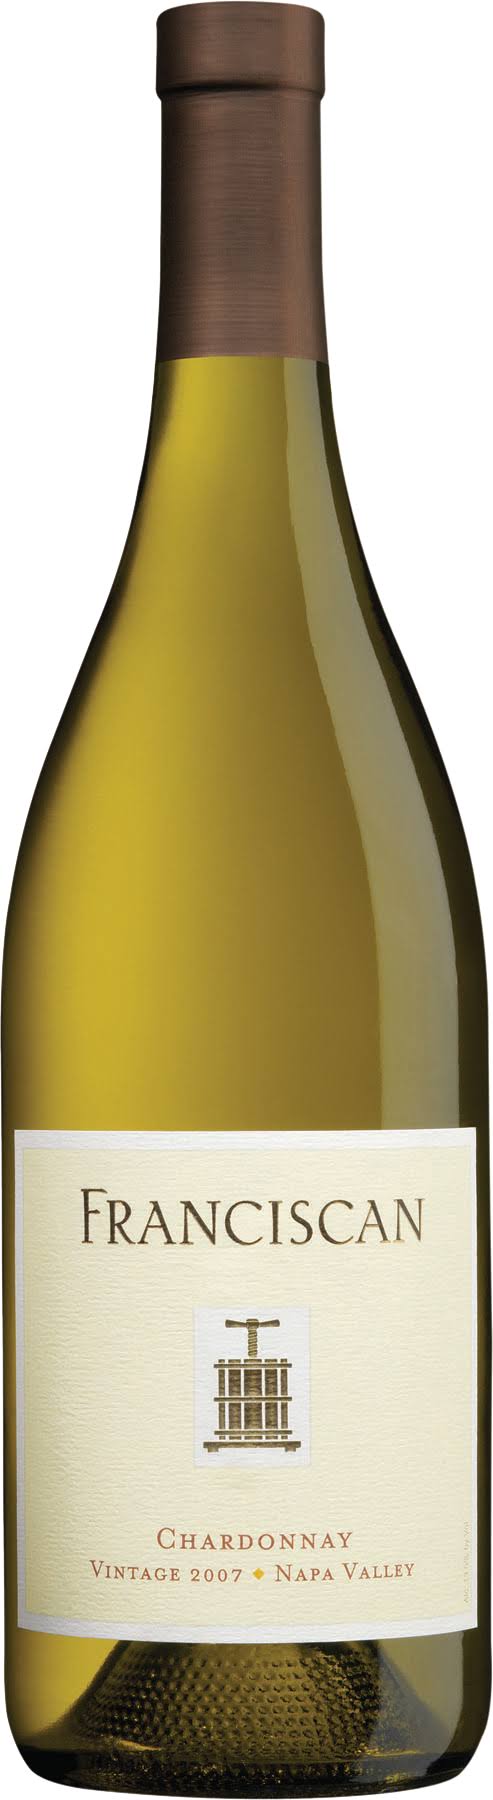 Franciscan Chardonnay, California - 750 ml